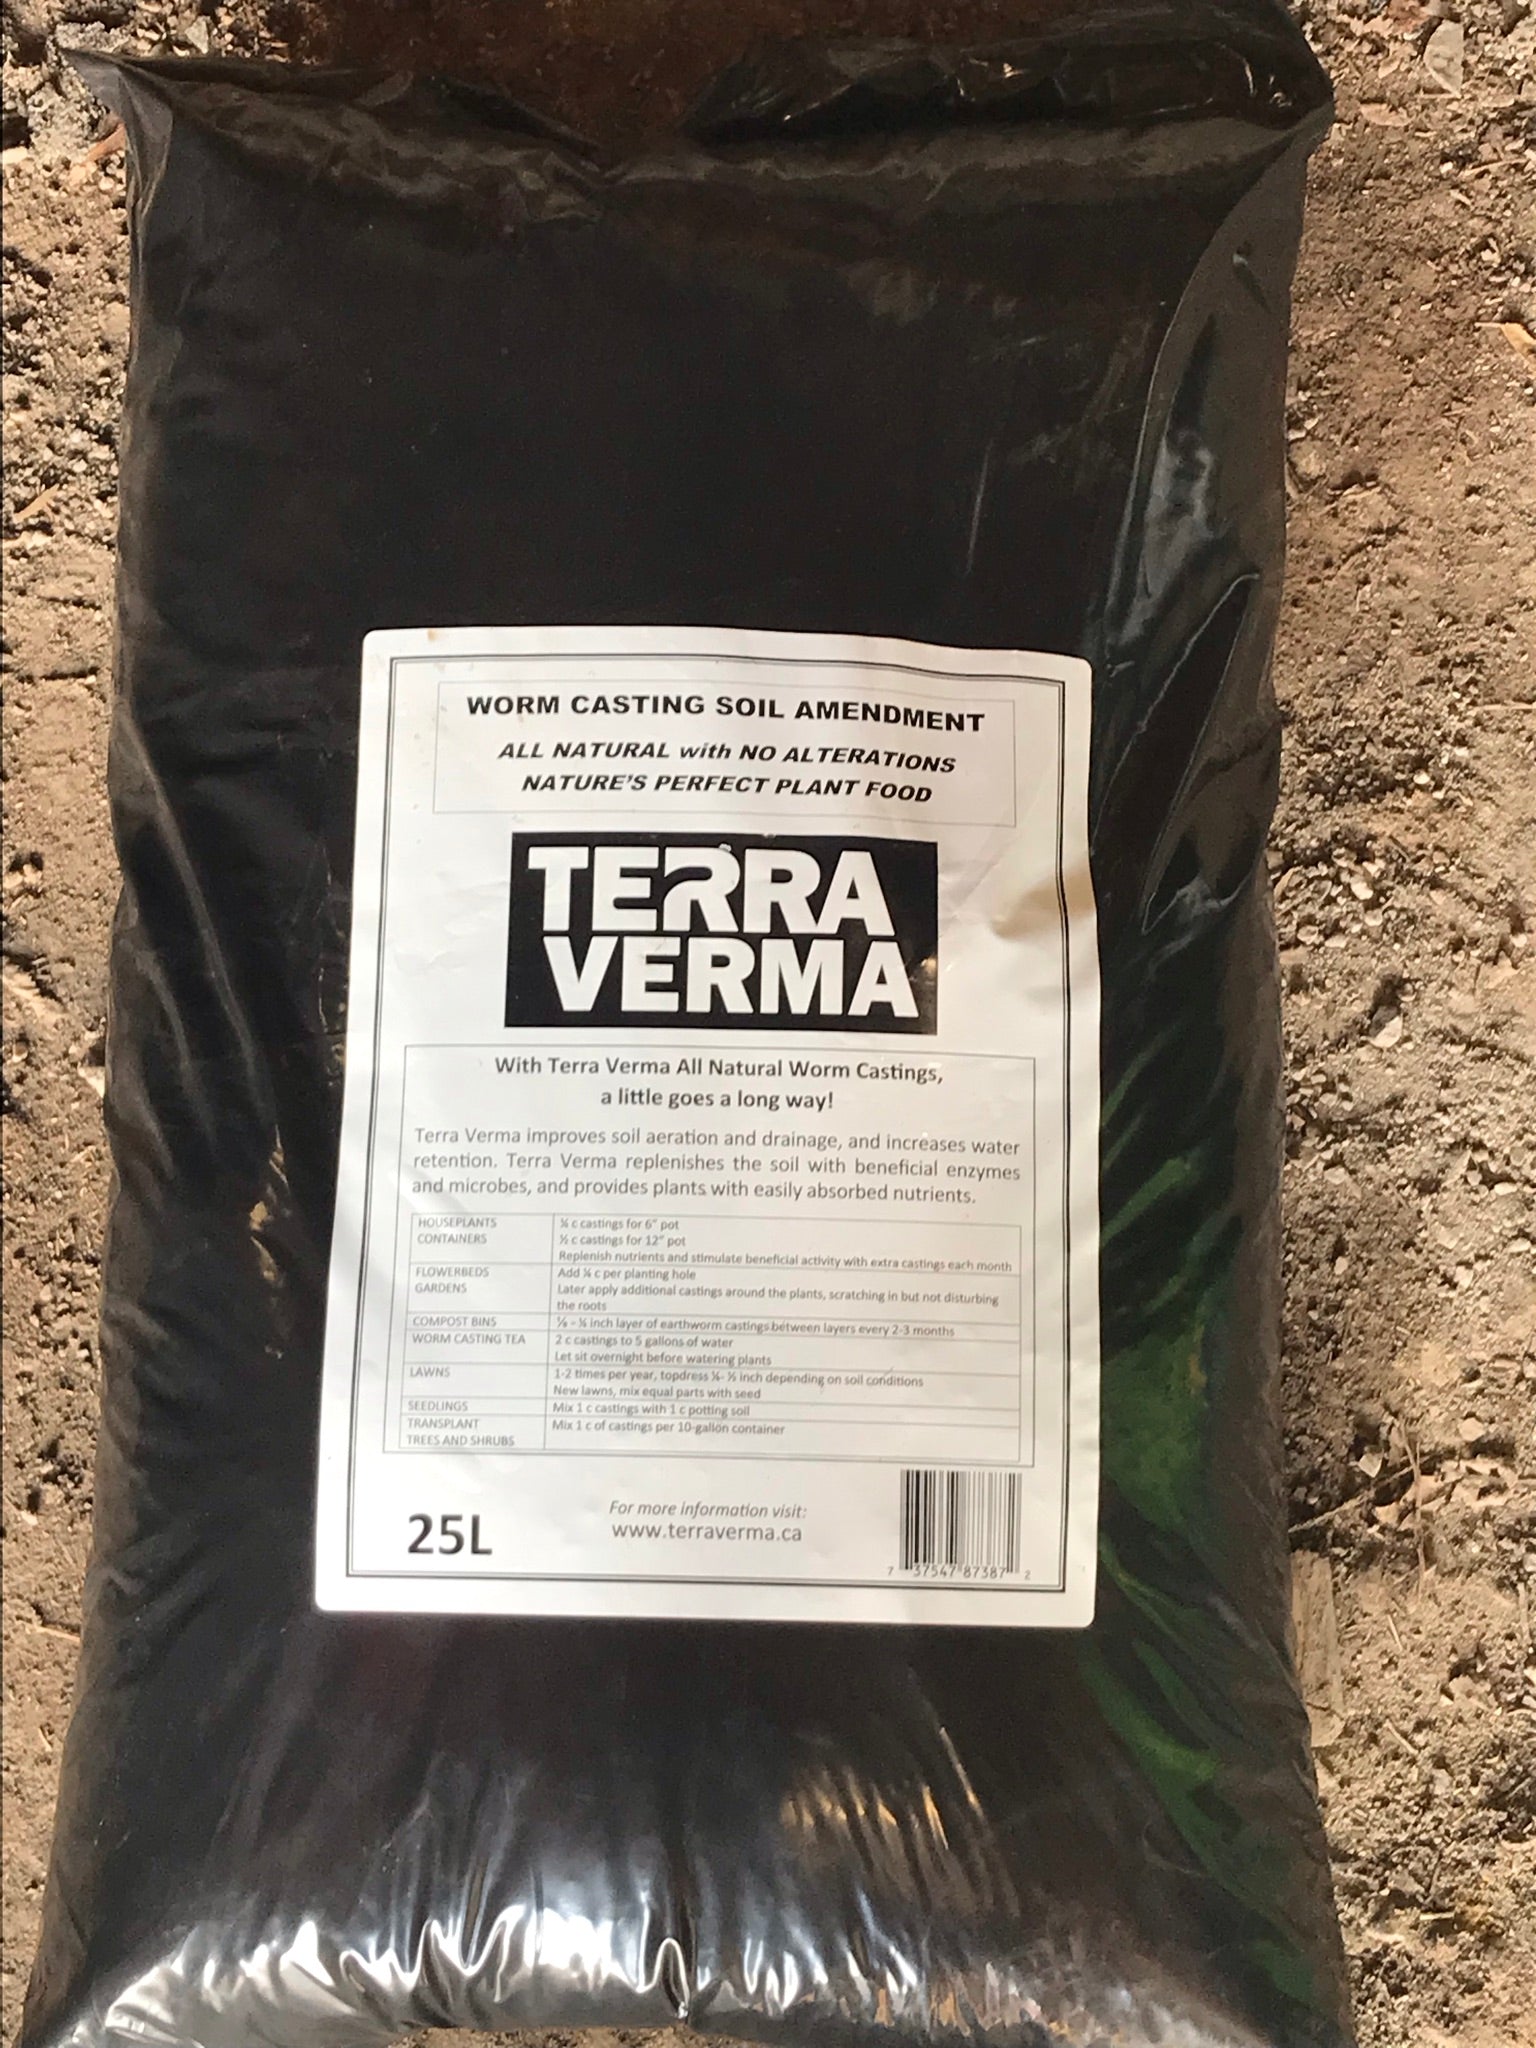 Terra Verma Earthworm Casting Soil Amendment - 25L Bag